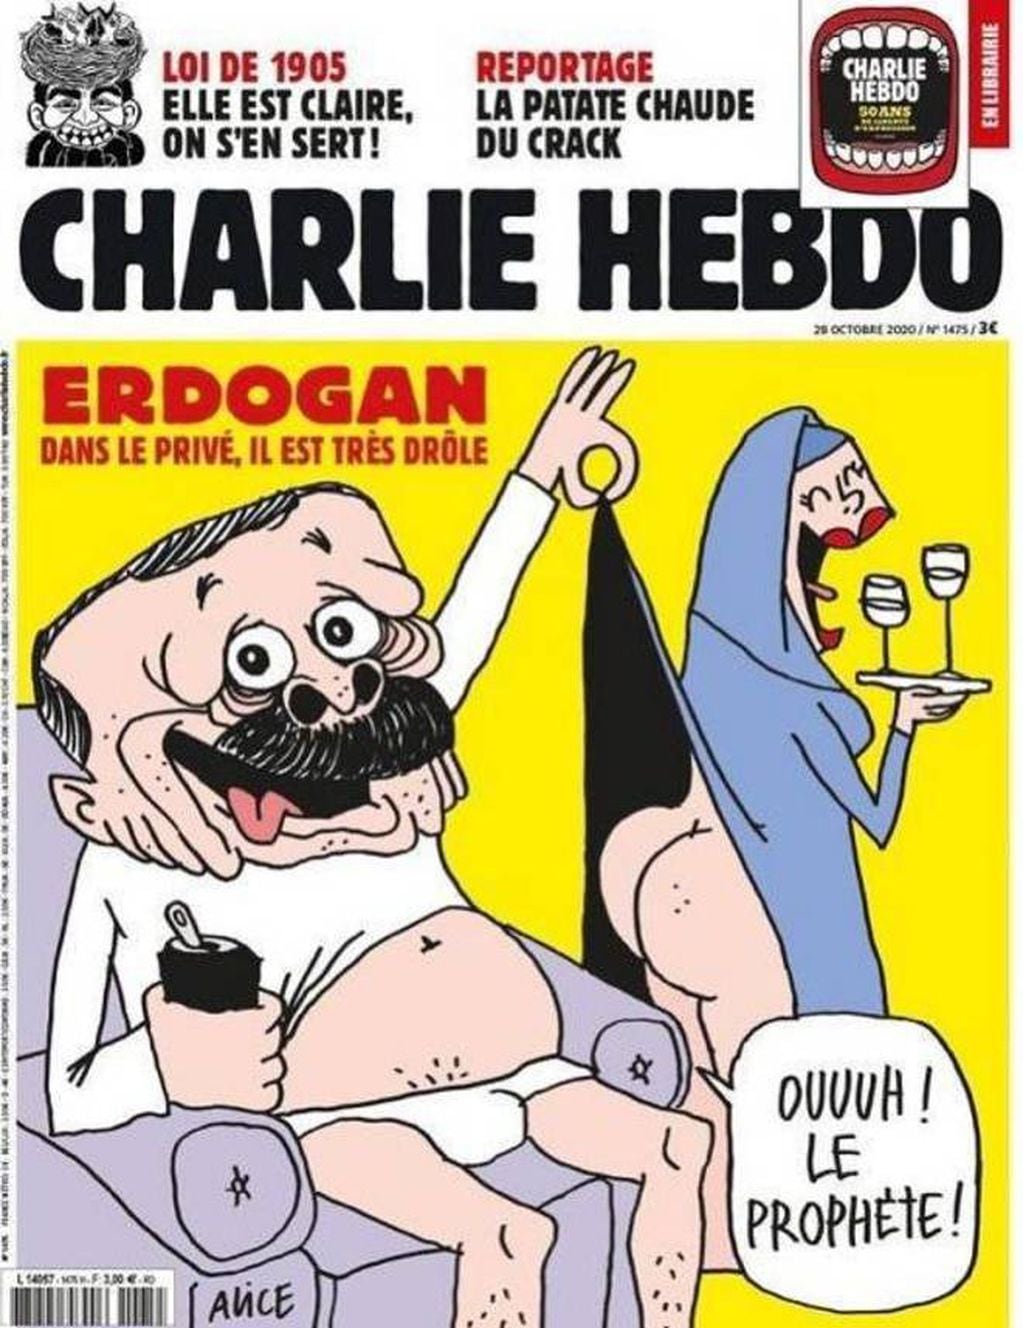 La tapa de la revista Charlie Hebdo despertó indignación en la política turca.